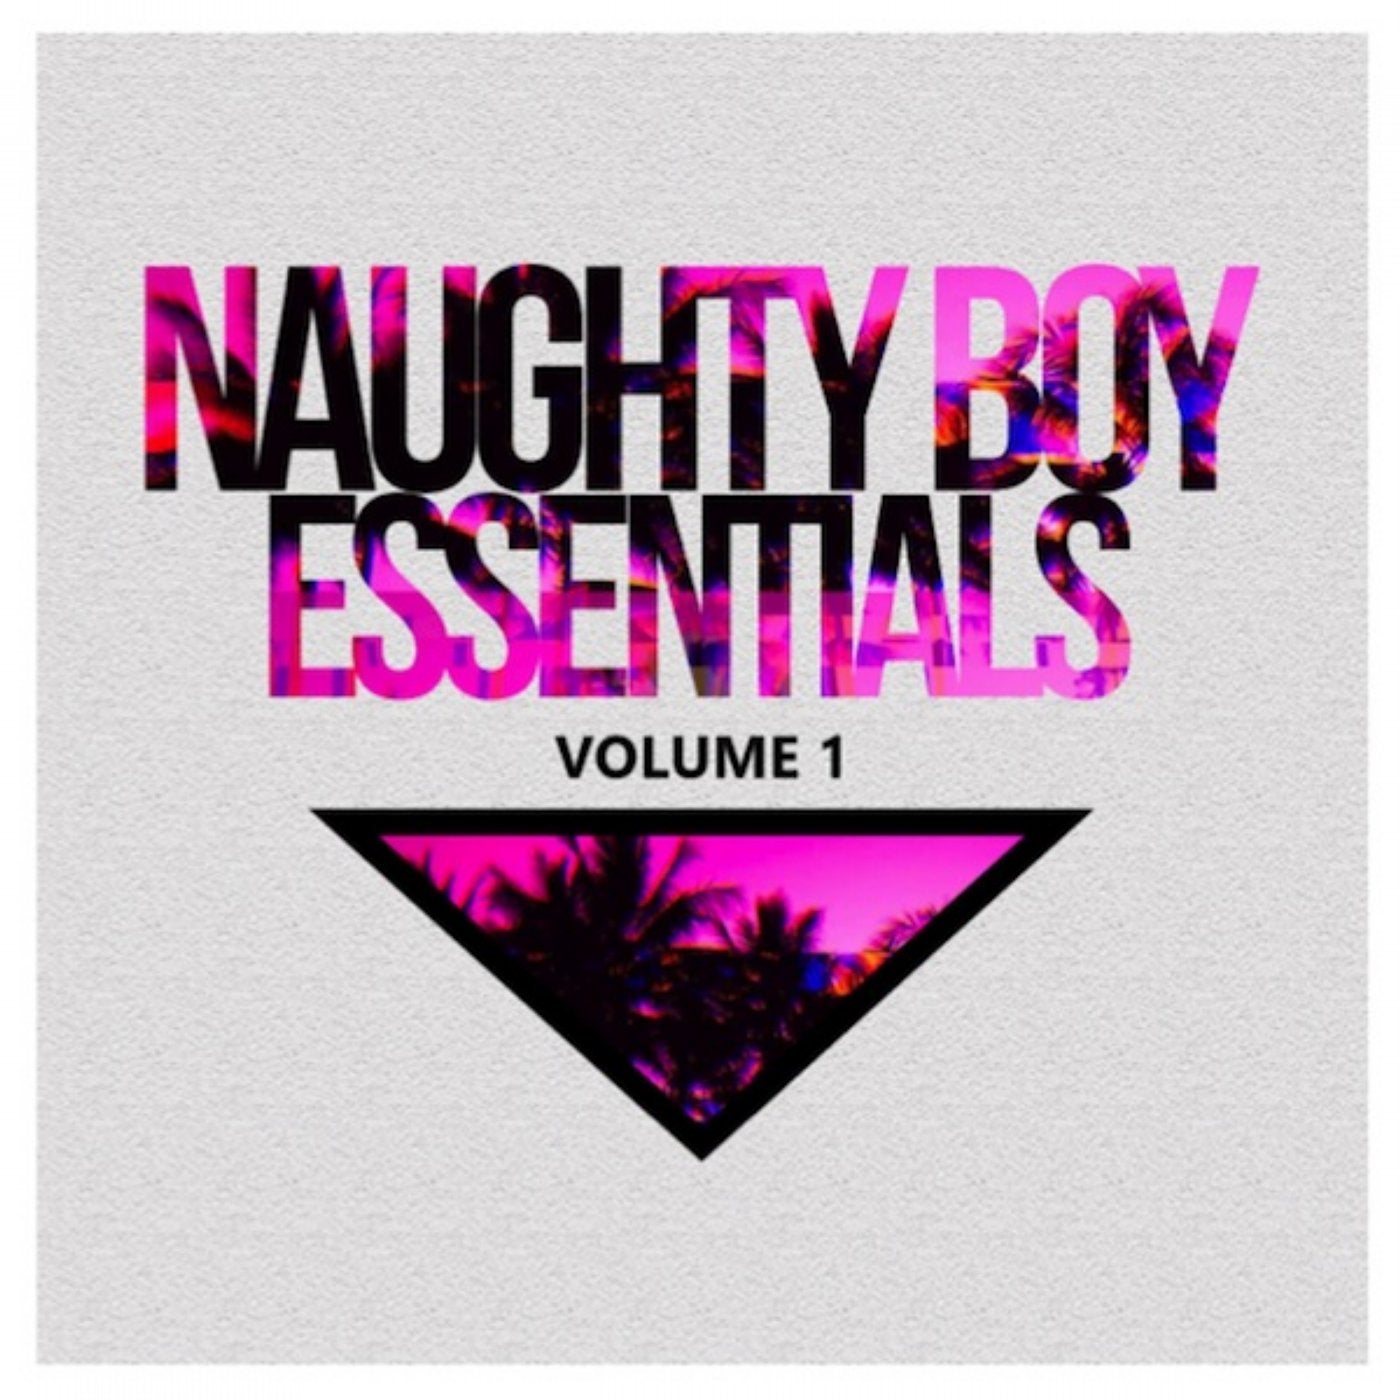 Naughty Boy Essentials Volume 1